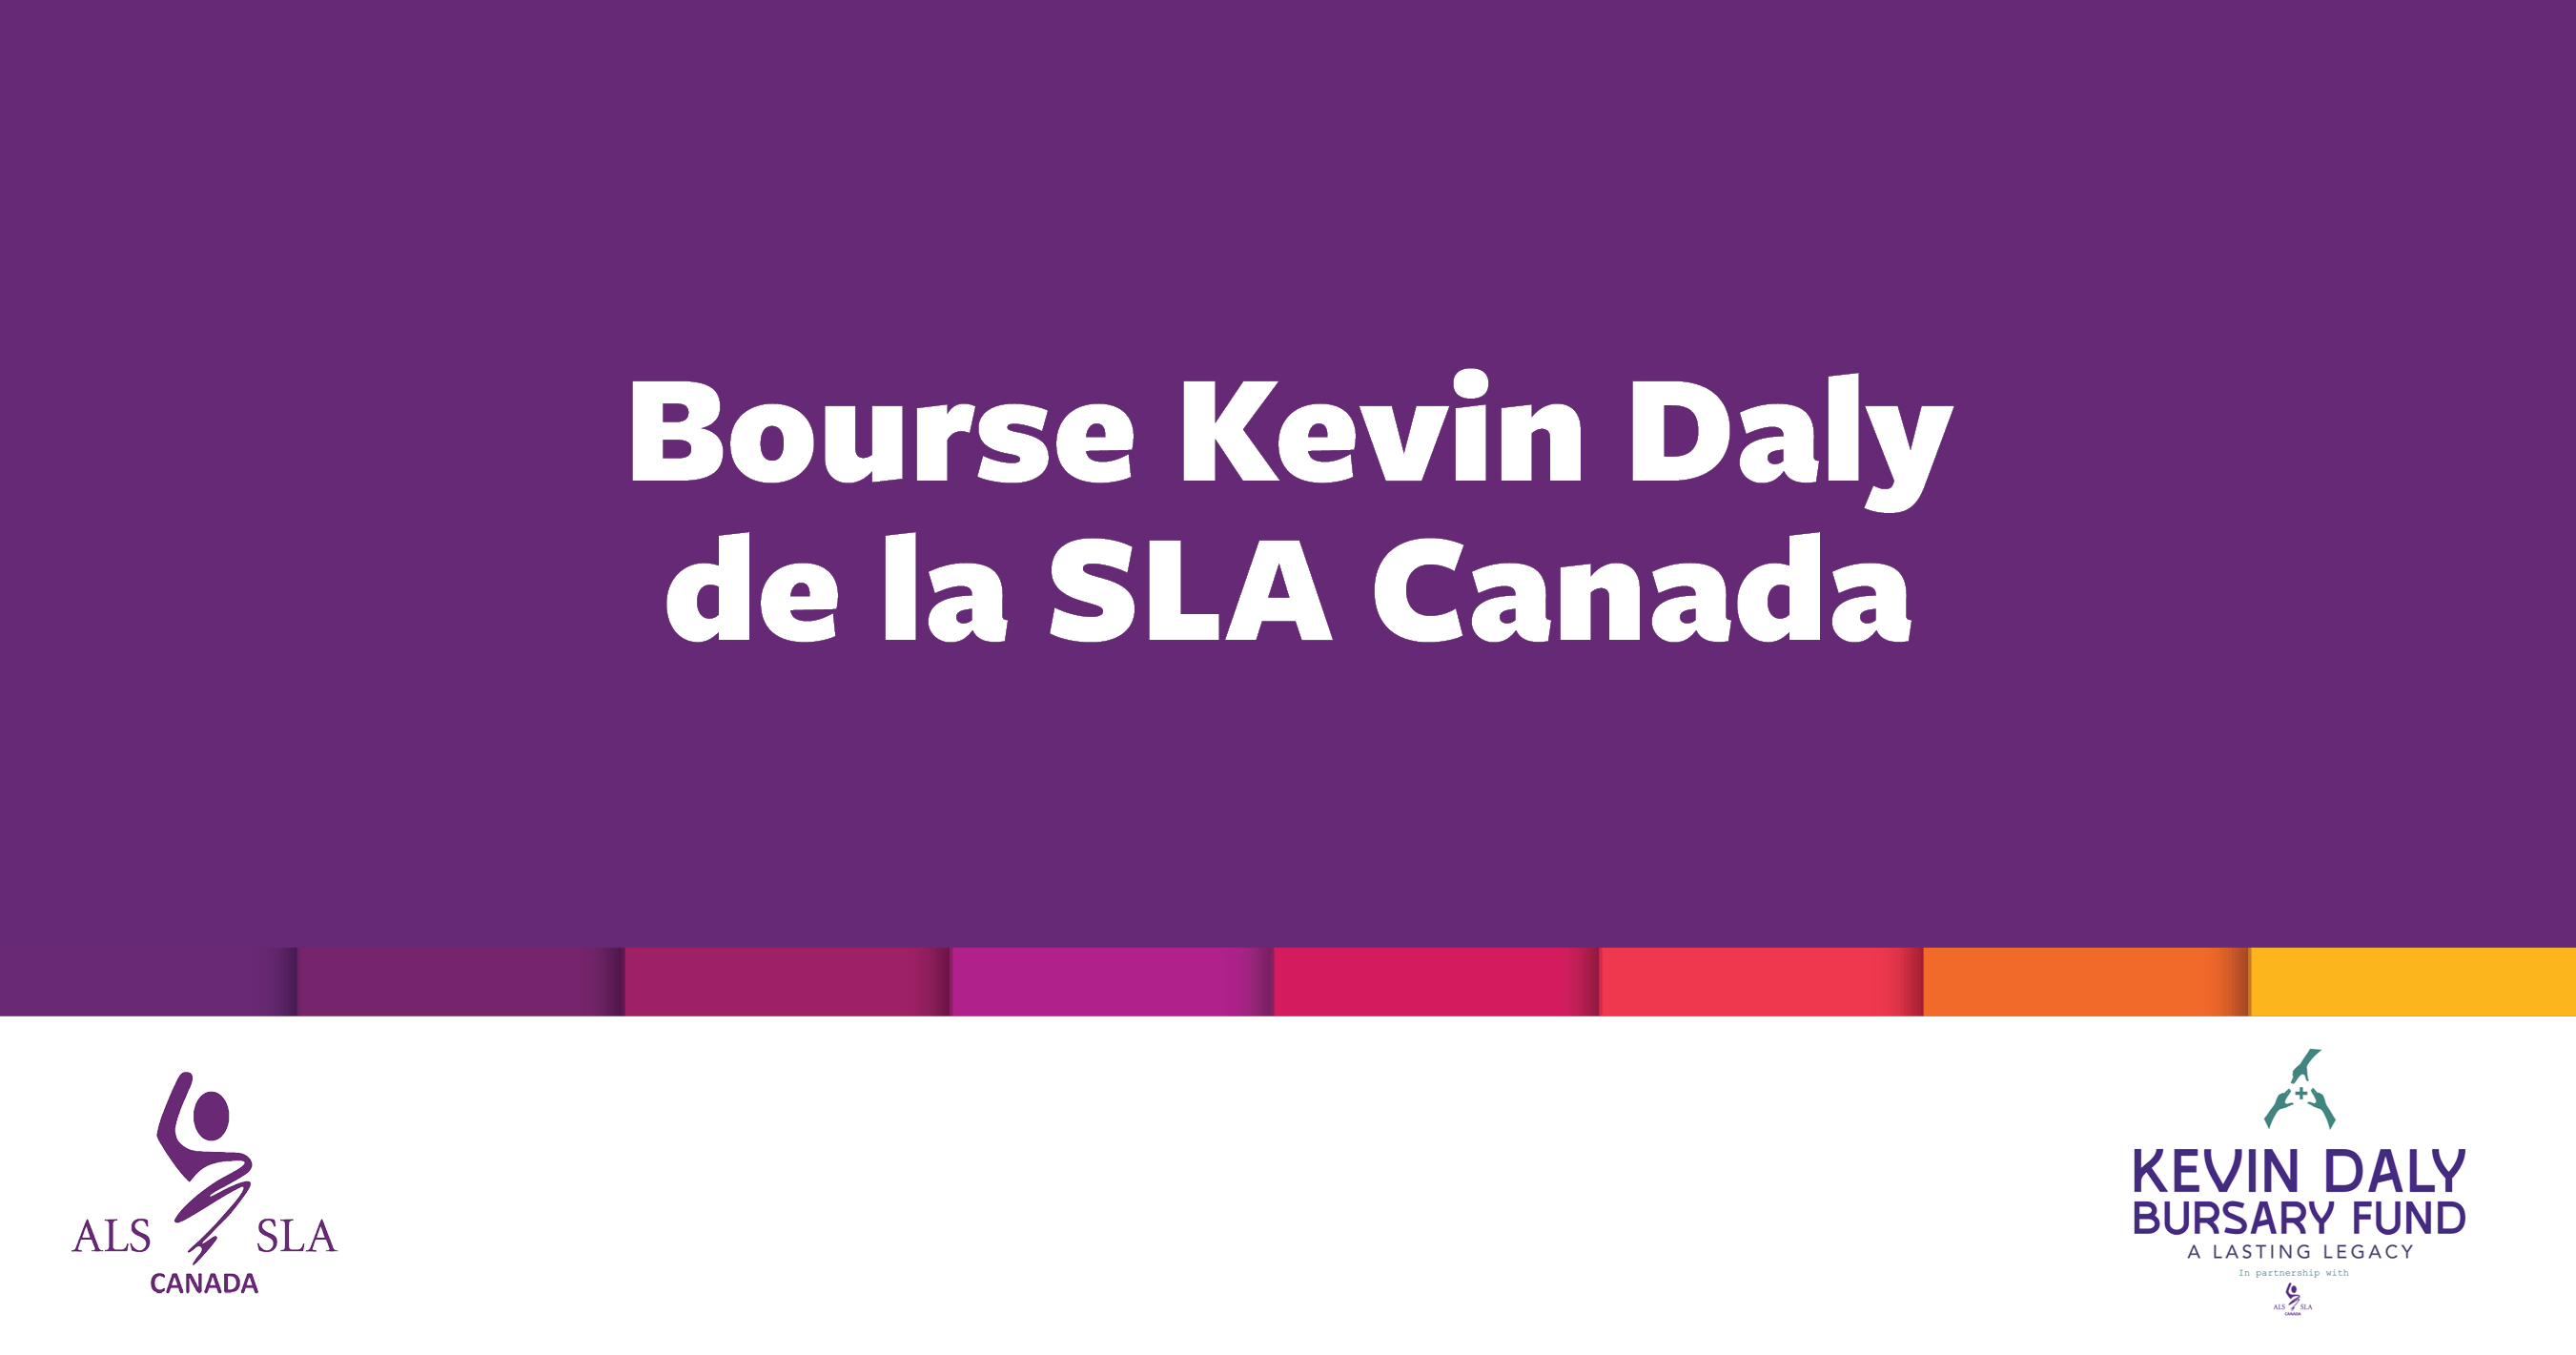 En partenariat avec les amis et les collègues de Kevin Daly, membre de la communauté SLA, la Société canadienne de la SLA a le plaisir d'annoncer les 